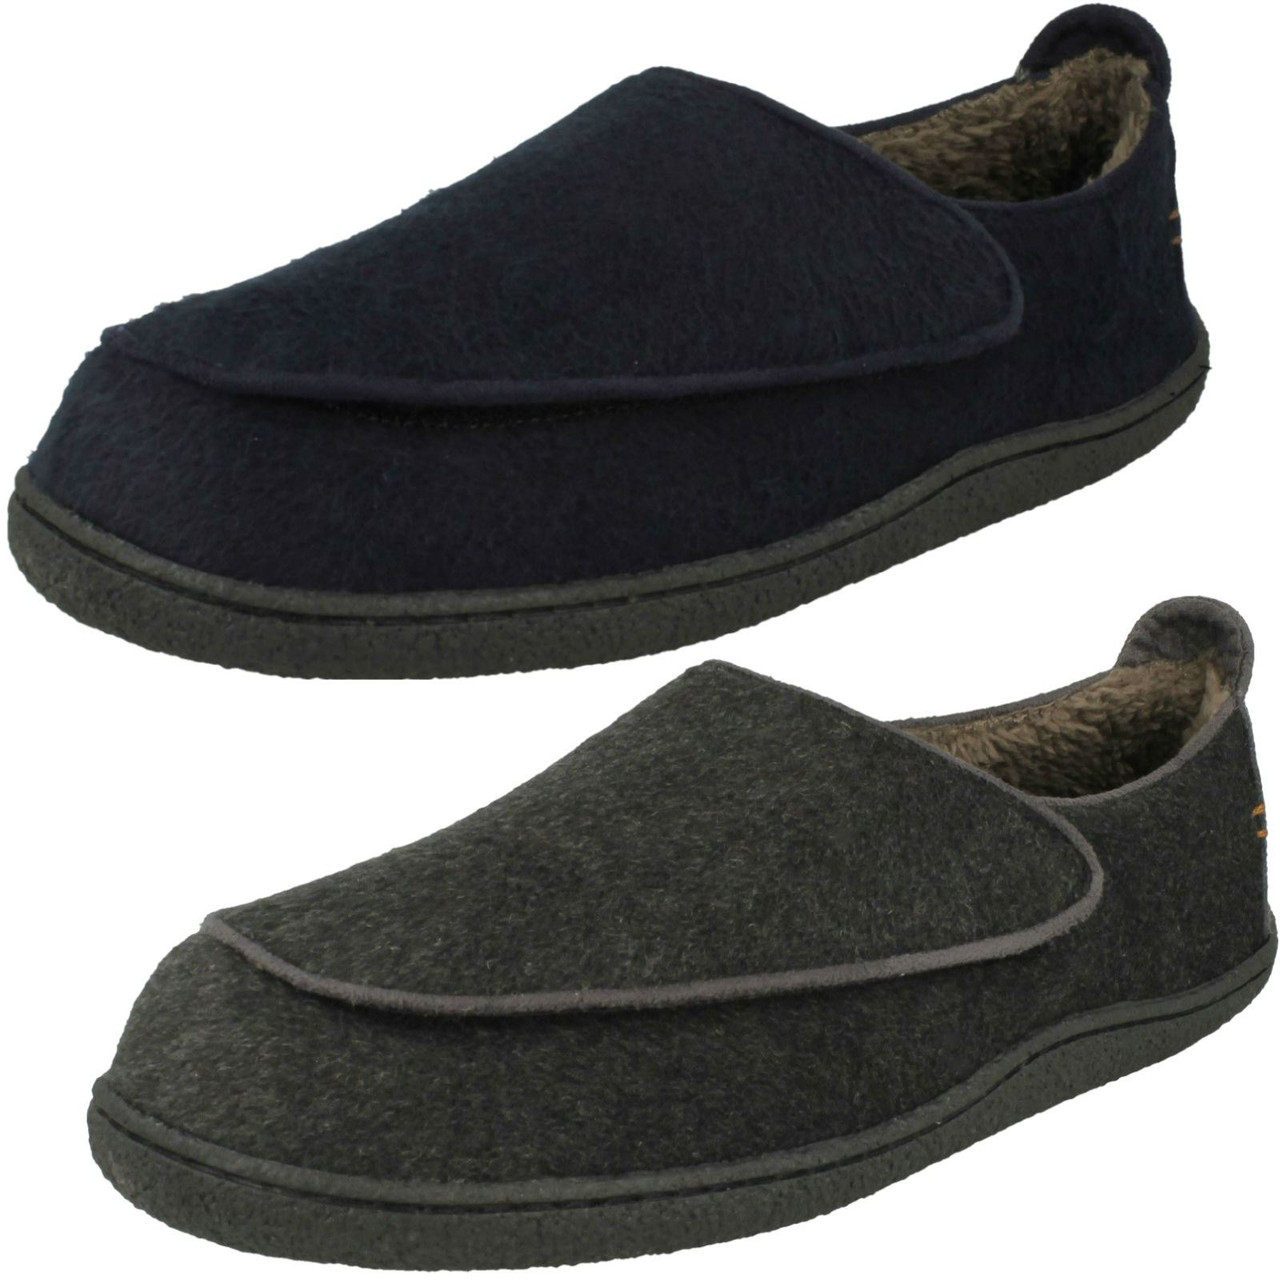 clarks mens velcro slippers